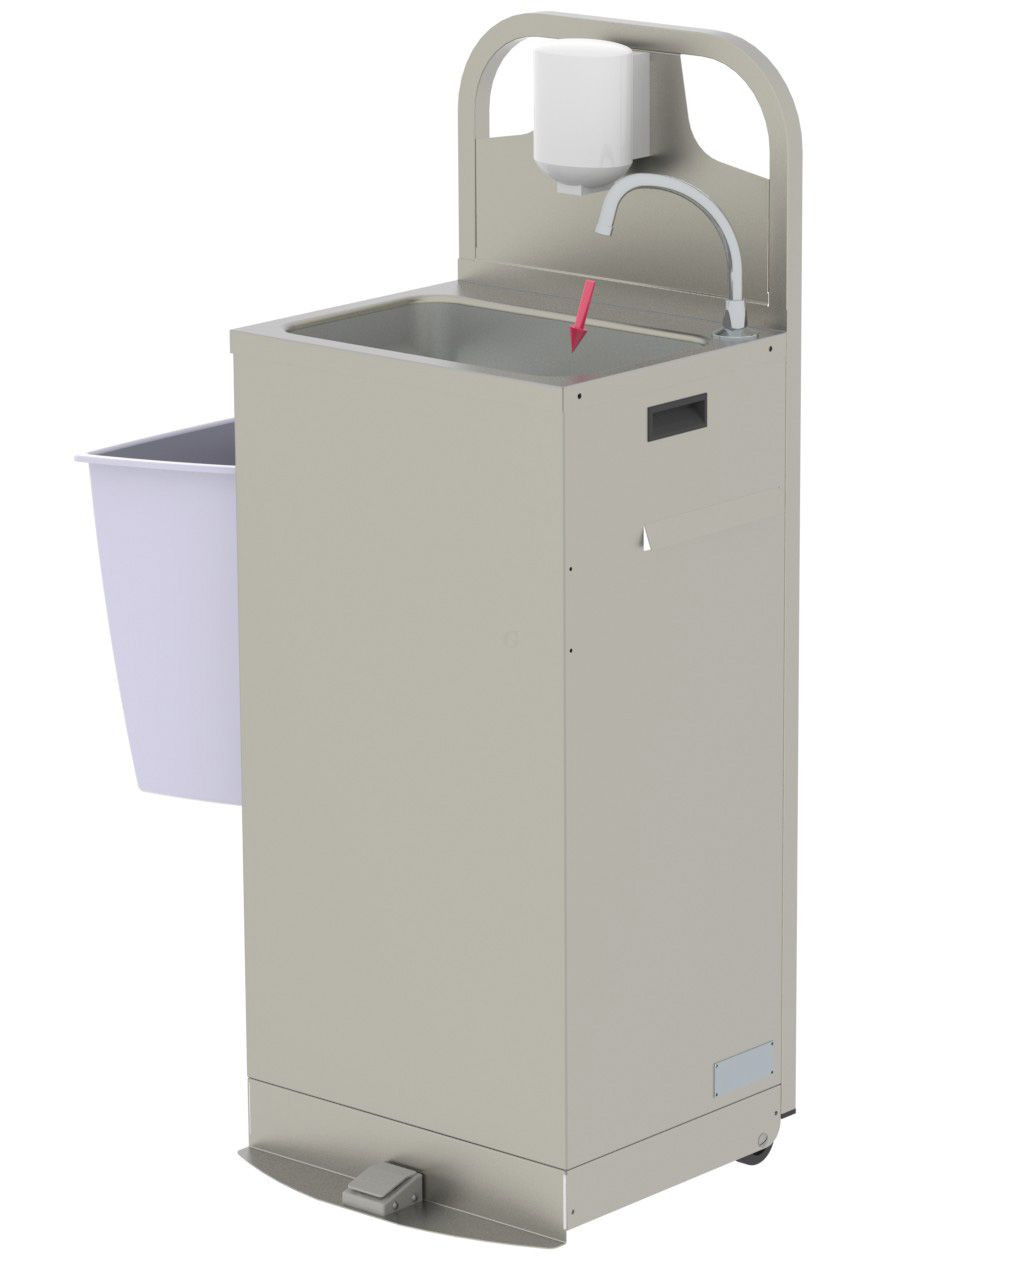 Neumärker Mobiles Handwaschbecken SM13 mit Durchlauferhitzer